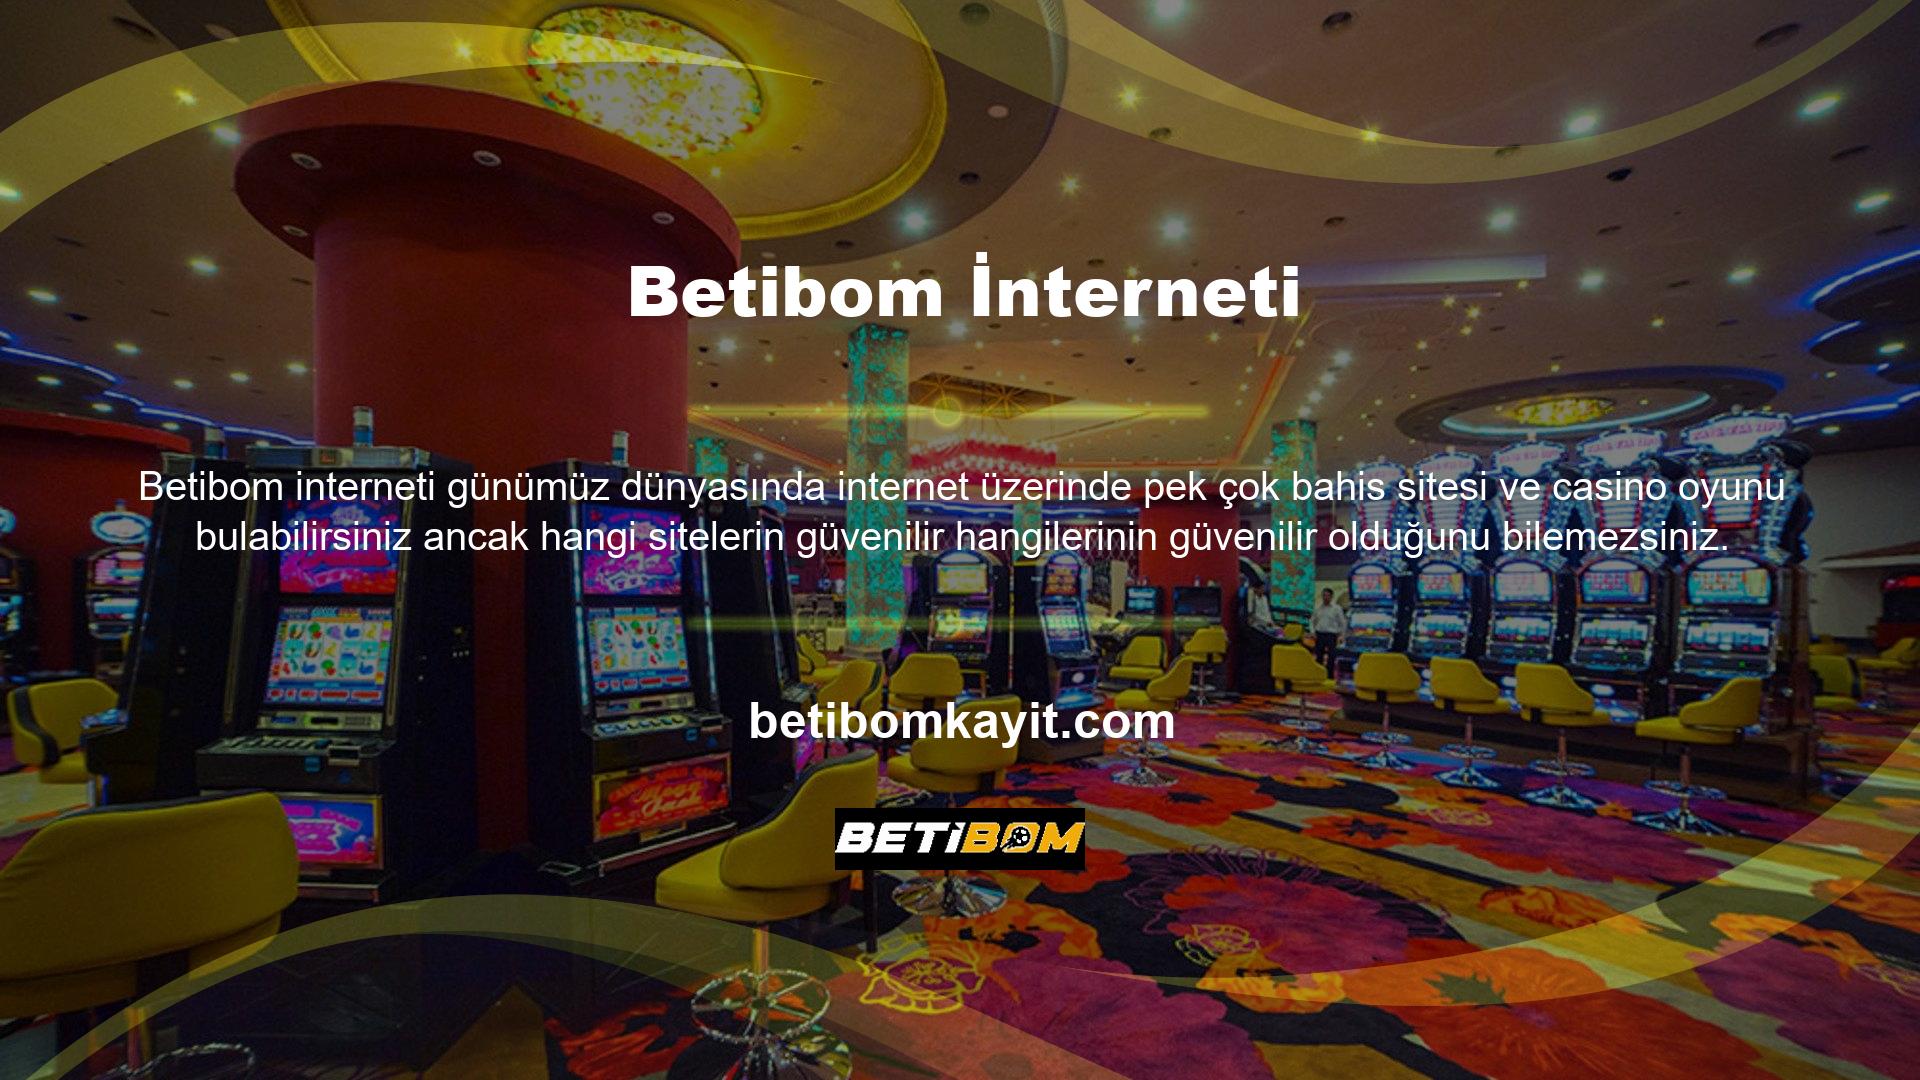 Bu nedenle spor bahisleri ve slot oyunları oynamak istiyorsanız Betibom bahis sitesi hakkında bilgi almak için Betibom kayıt sayfasını ziyaret etmenizi öneririz